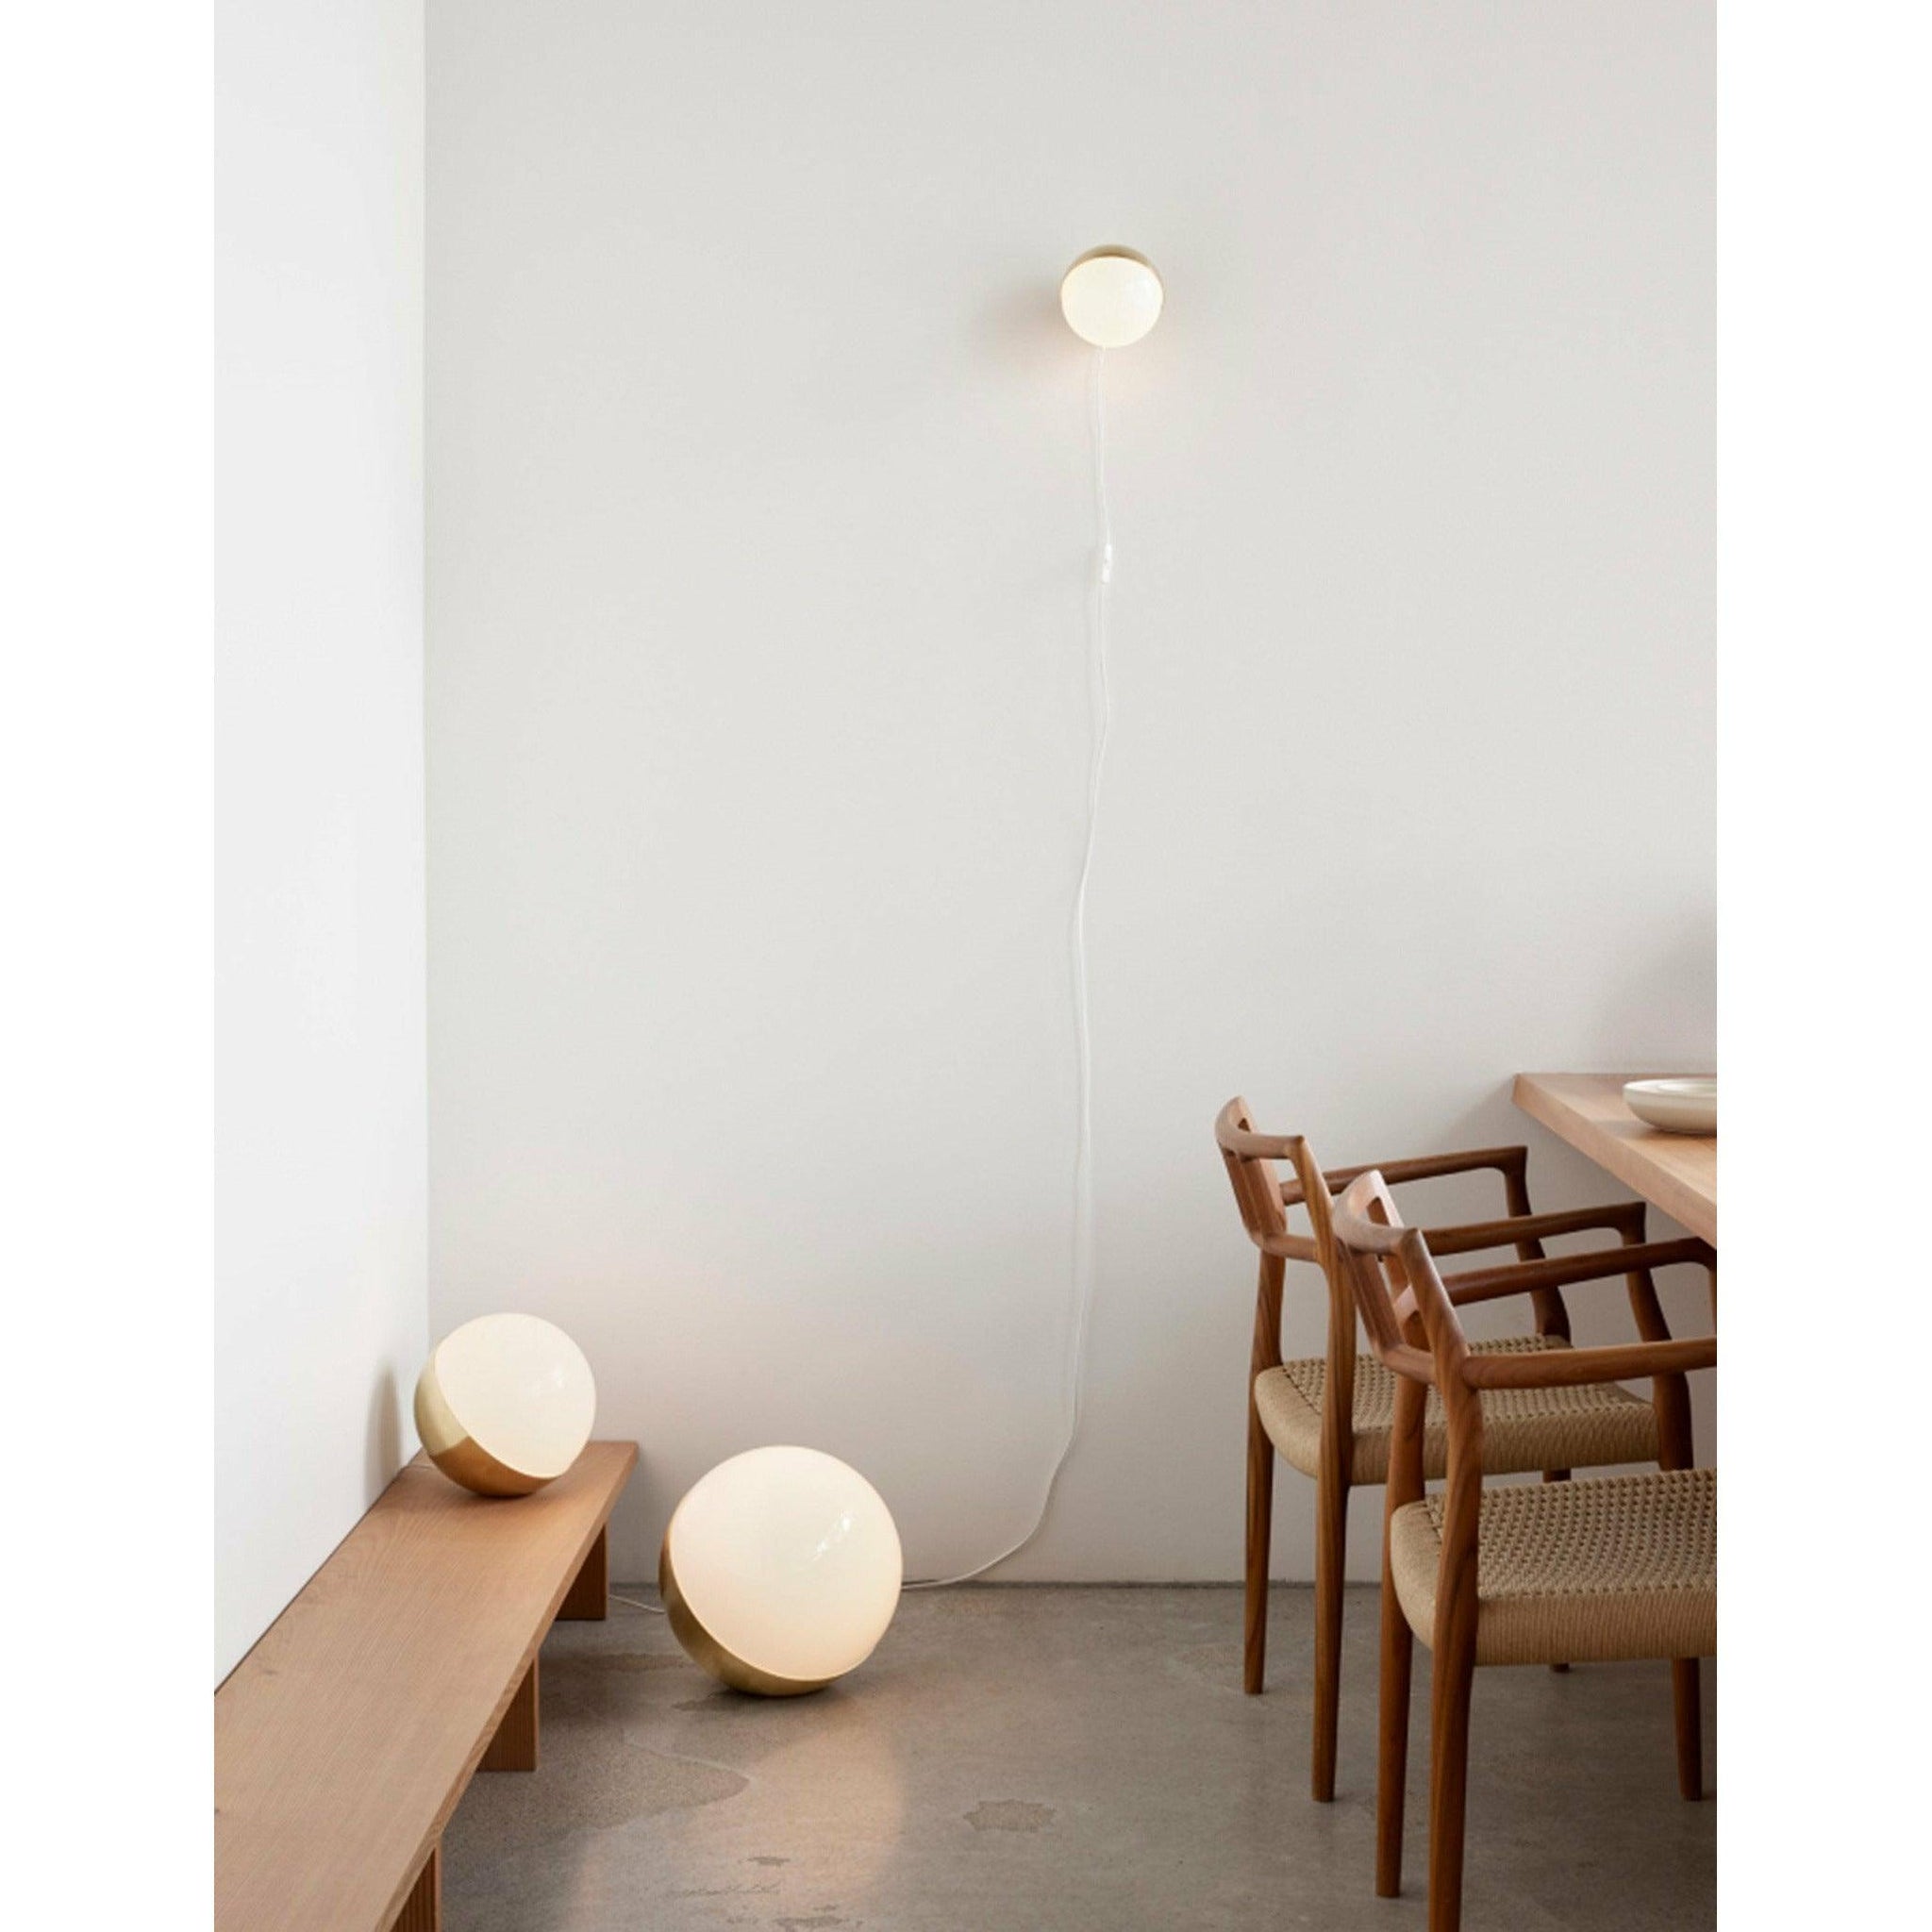 Louis Poulsen Vl White LED Floor Lamp